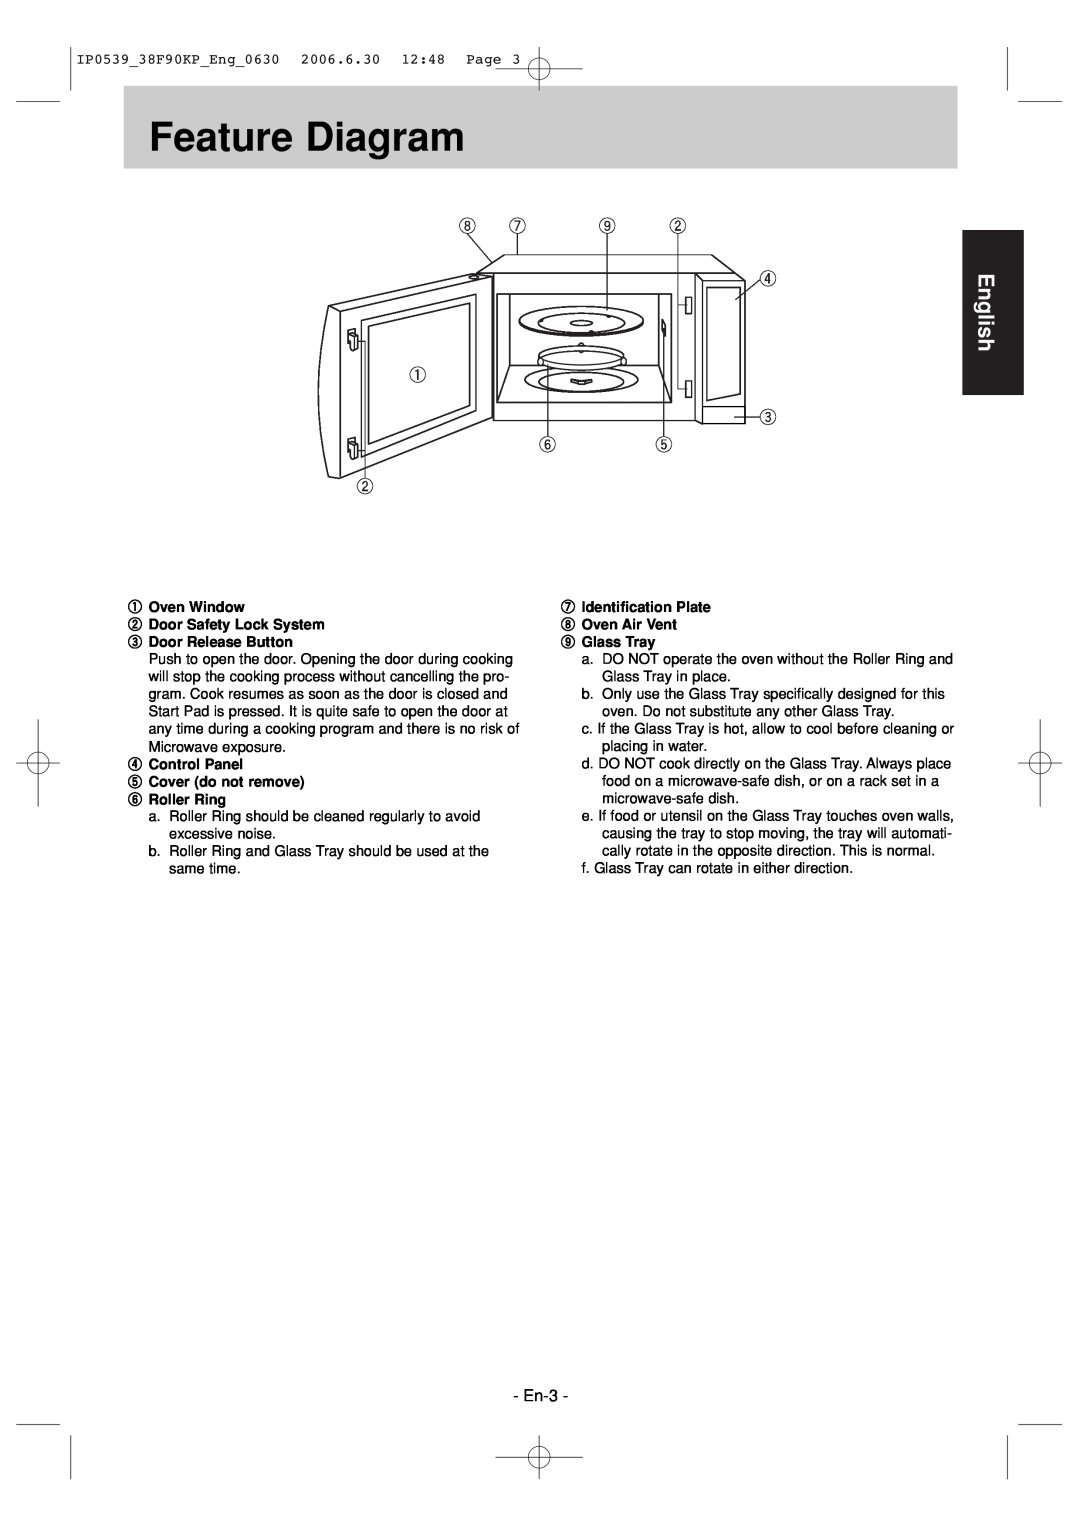 Panasonic NN-ST686S Feature Diagram, En-3, English, Oven Window 2 Door Safety Lock System 3 Door Release Button 